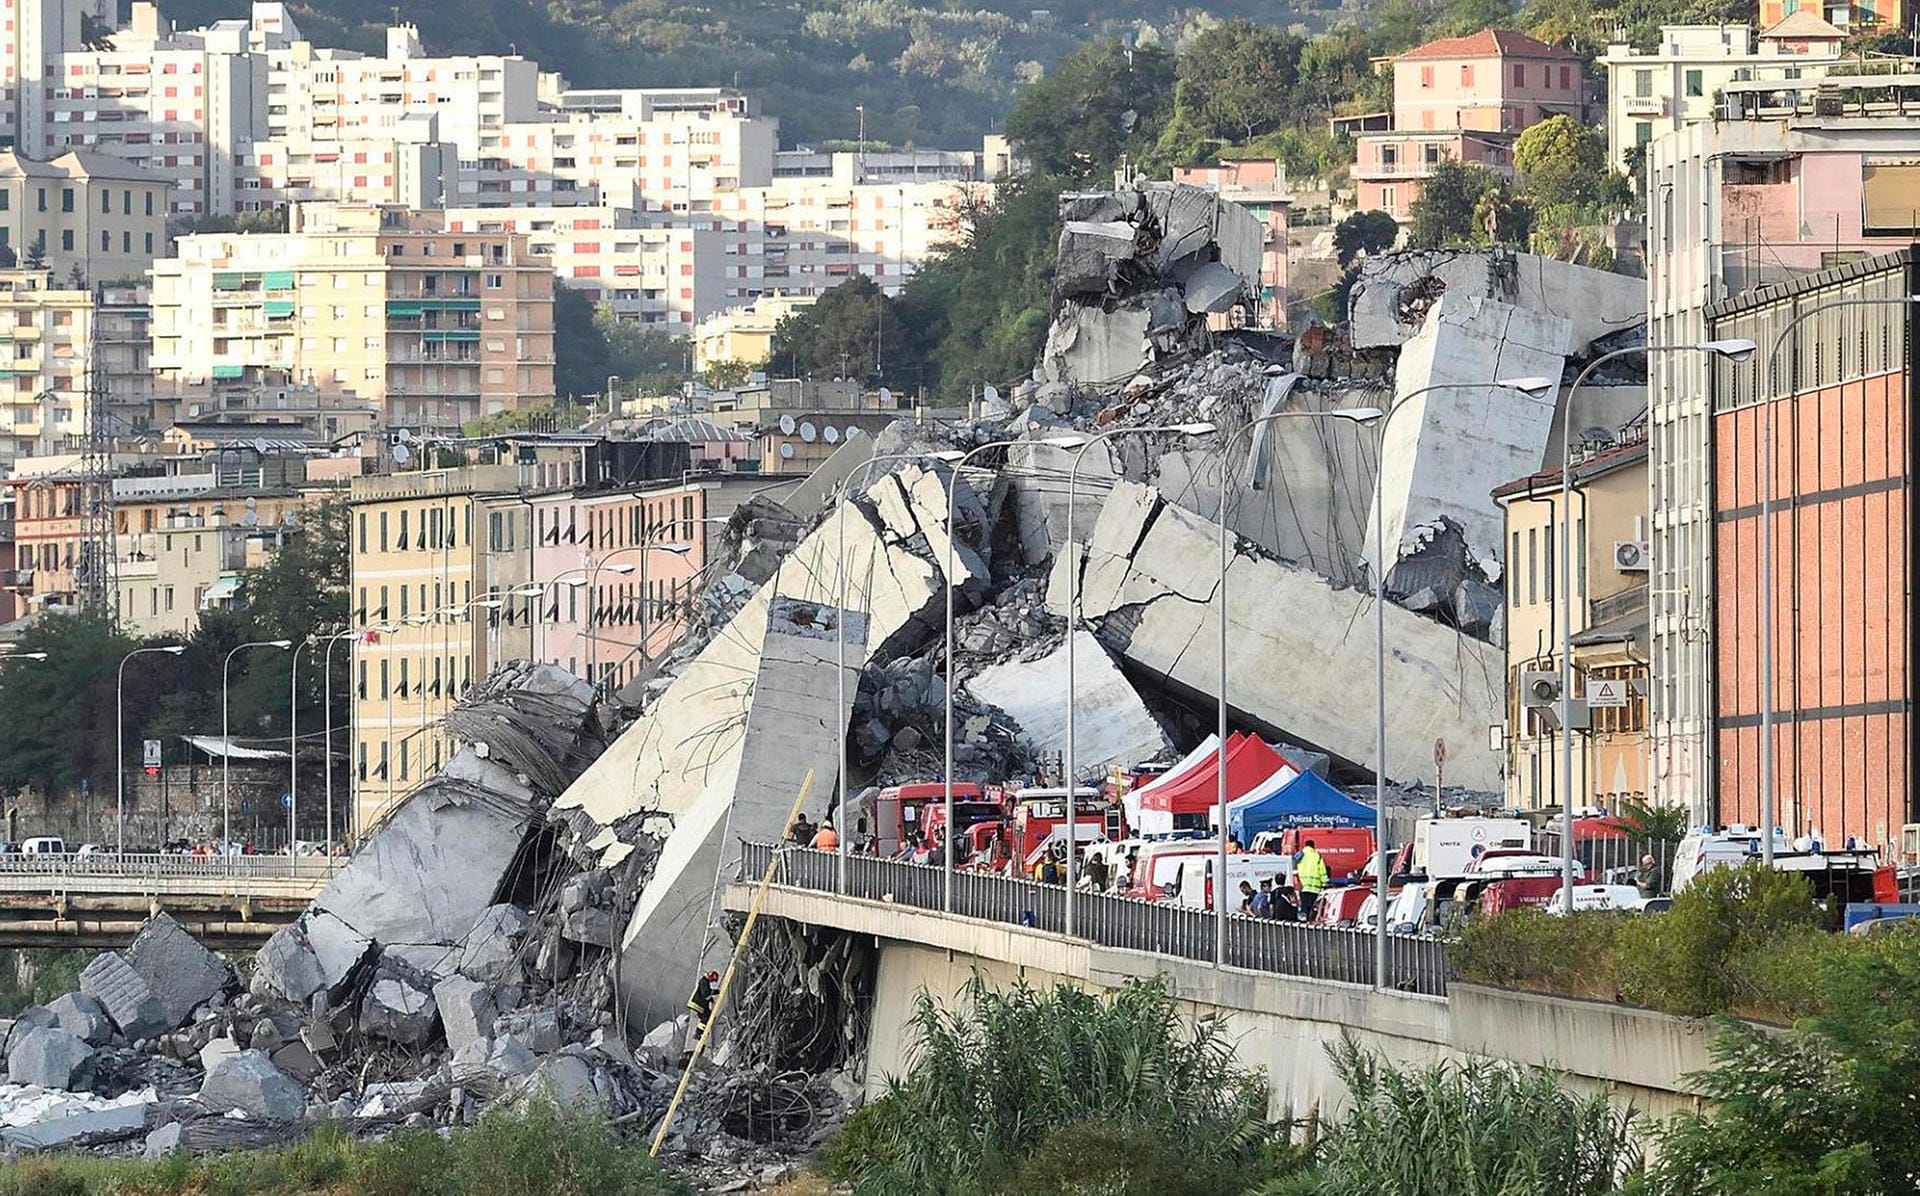 Fahrzeuge der Rettungskräfte stehen vor der teilweise eingestürzten Autobahnbrücke. Der Einsturz der Ponte Morandi erfolgte auf etwa 100 Metern Länge.